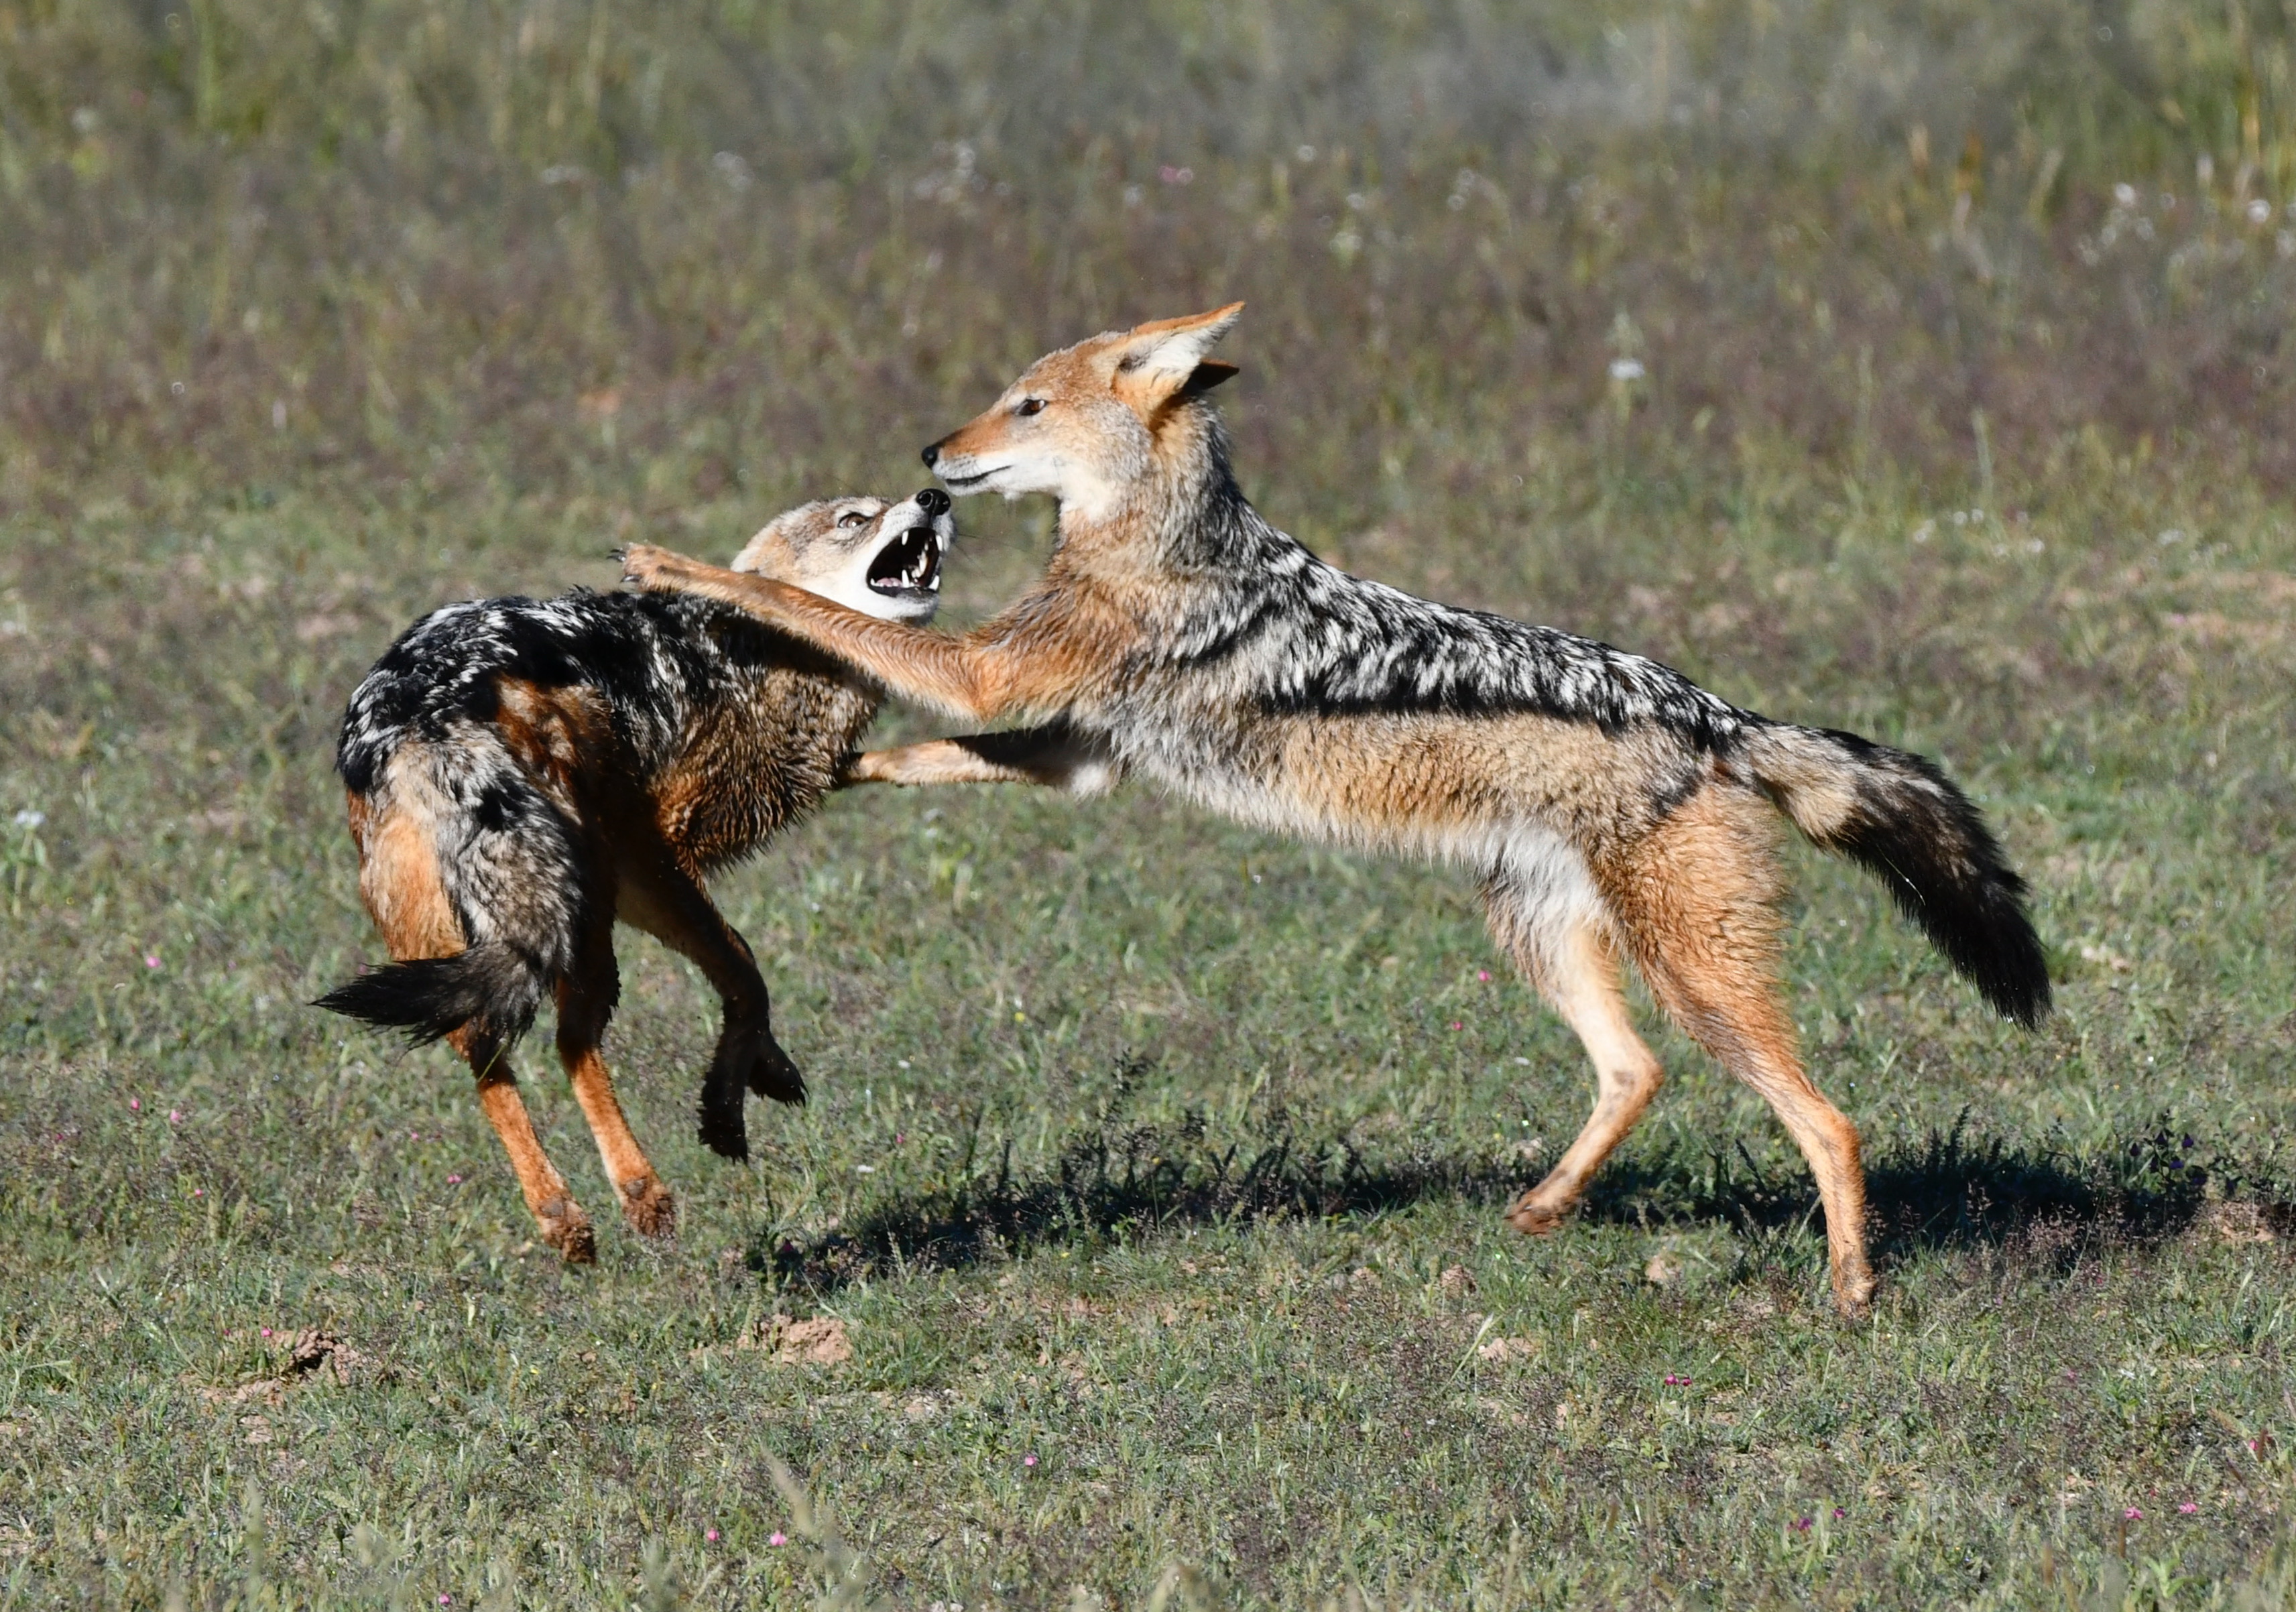 Black-backed jackals at play